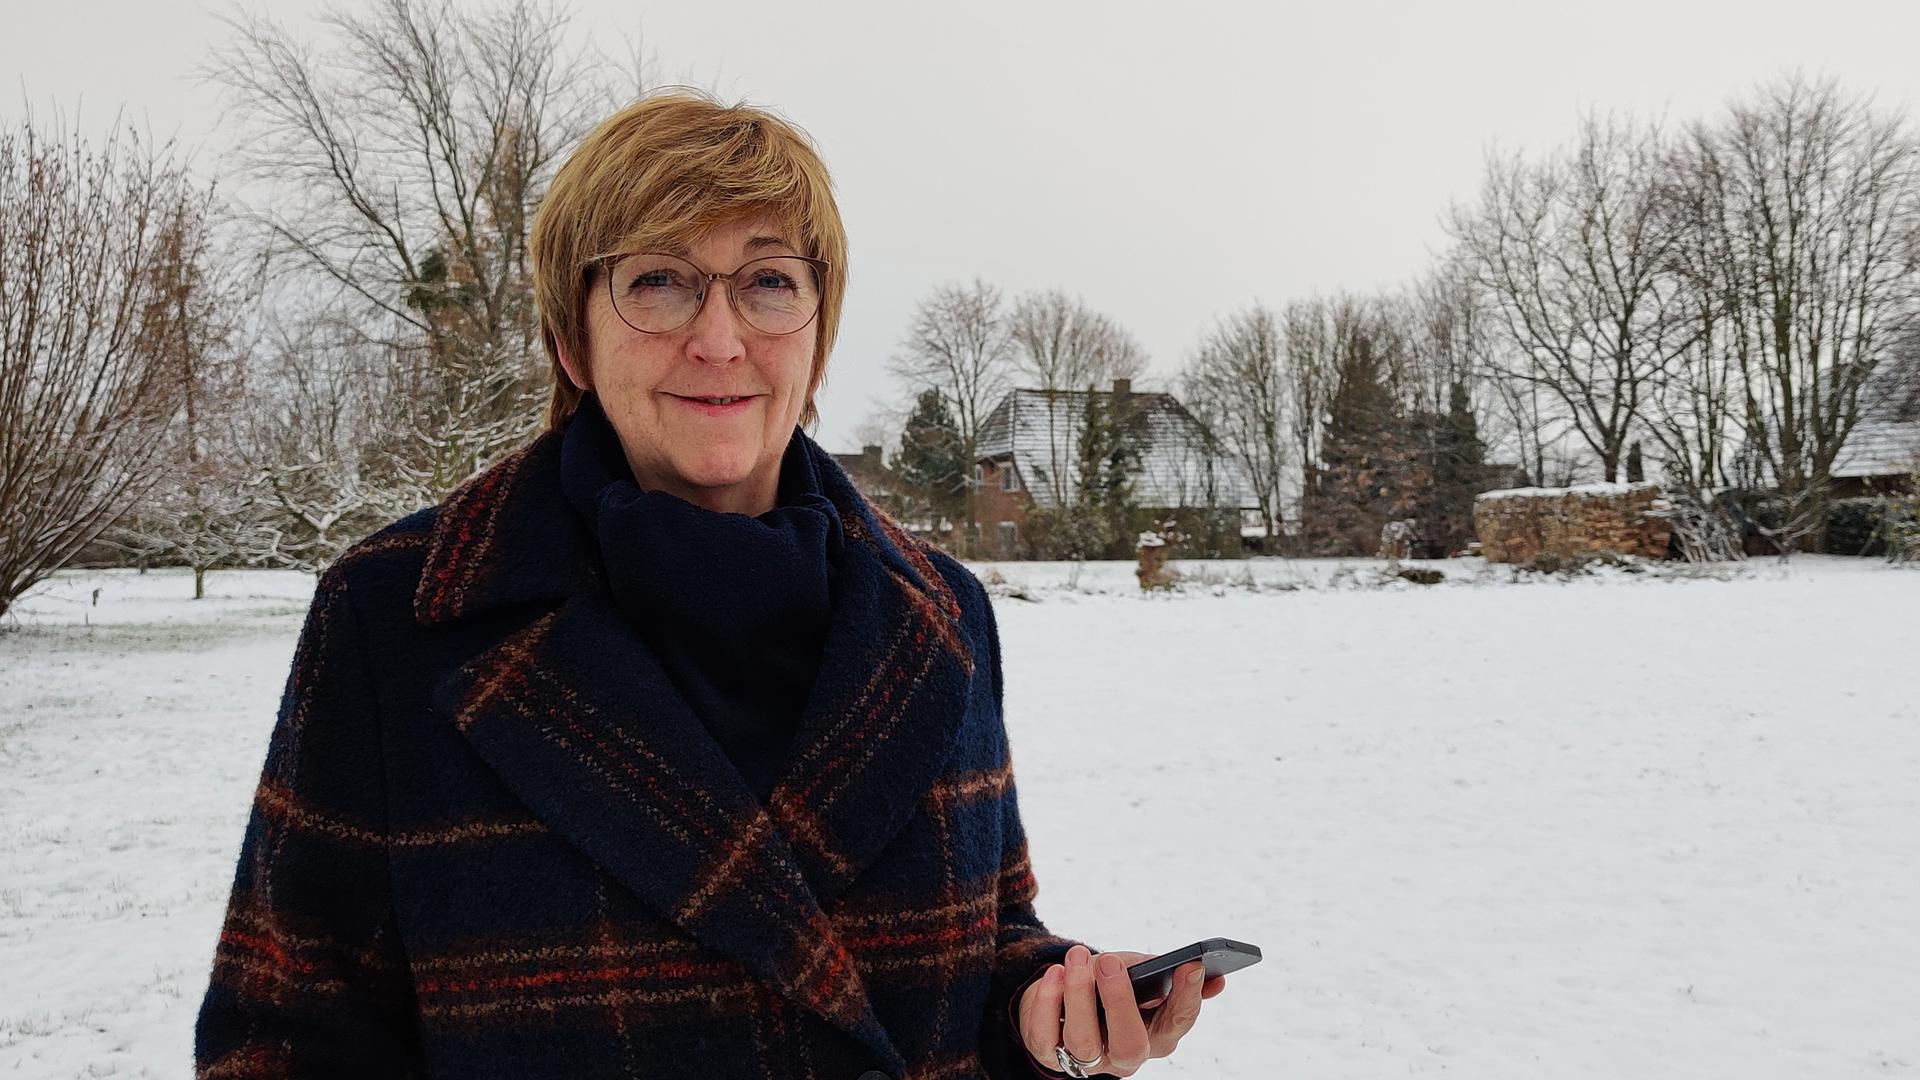 Elke Vespermann steht mit ihrem Smartphone in der Hand in einer verschneiten Landschaft. Sie trägt einen Mantel, Brille und schaut freundlich in die Kamera